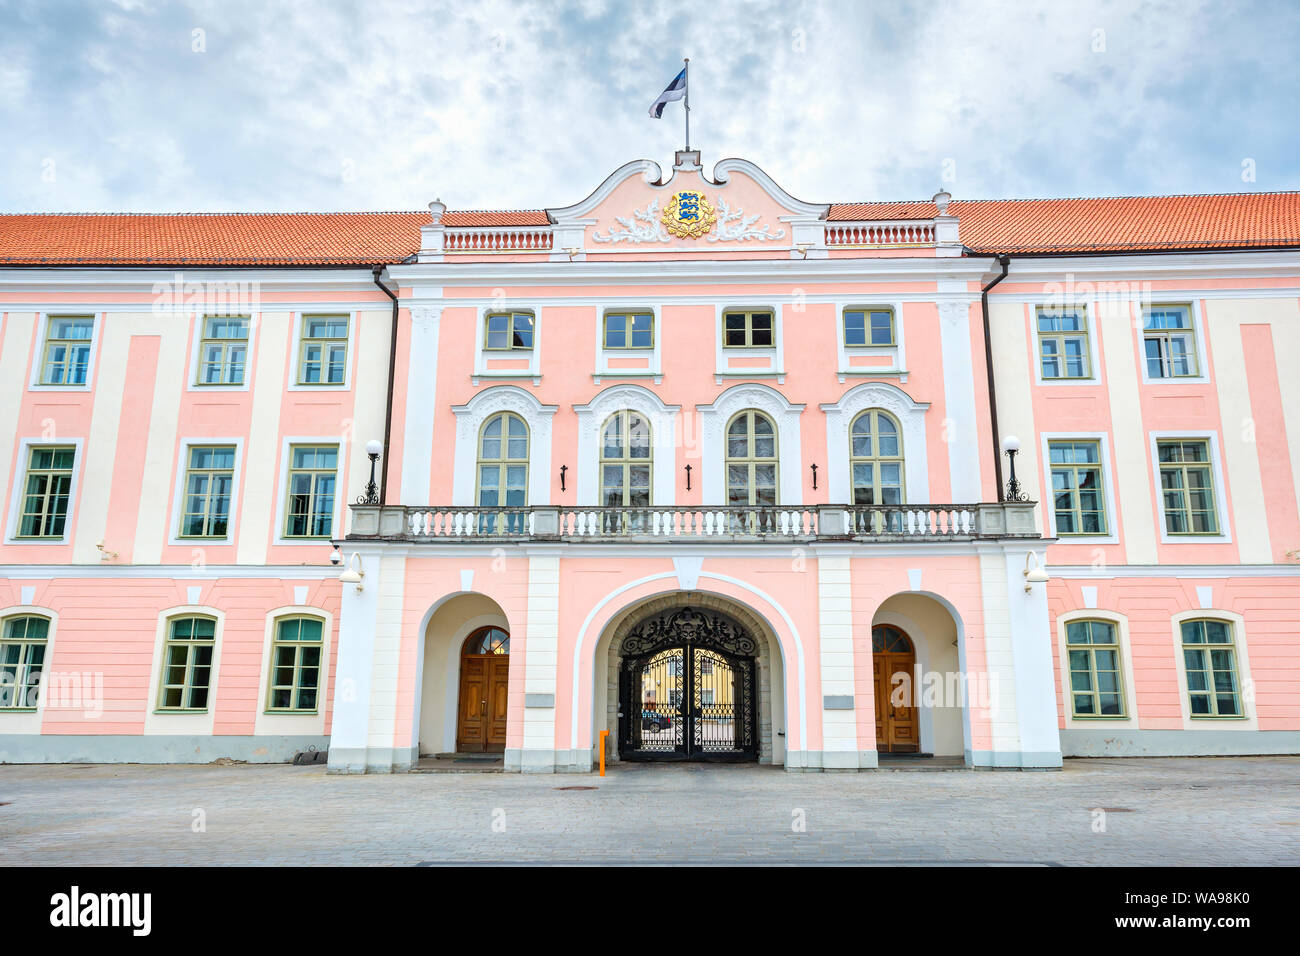 Vue de parlement estonien (Riigikogu) immeuble sur la colline de Toompea. Tallinn, Estonie, Europe Banque D'Images